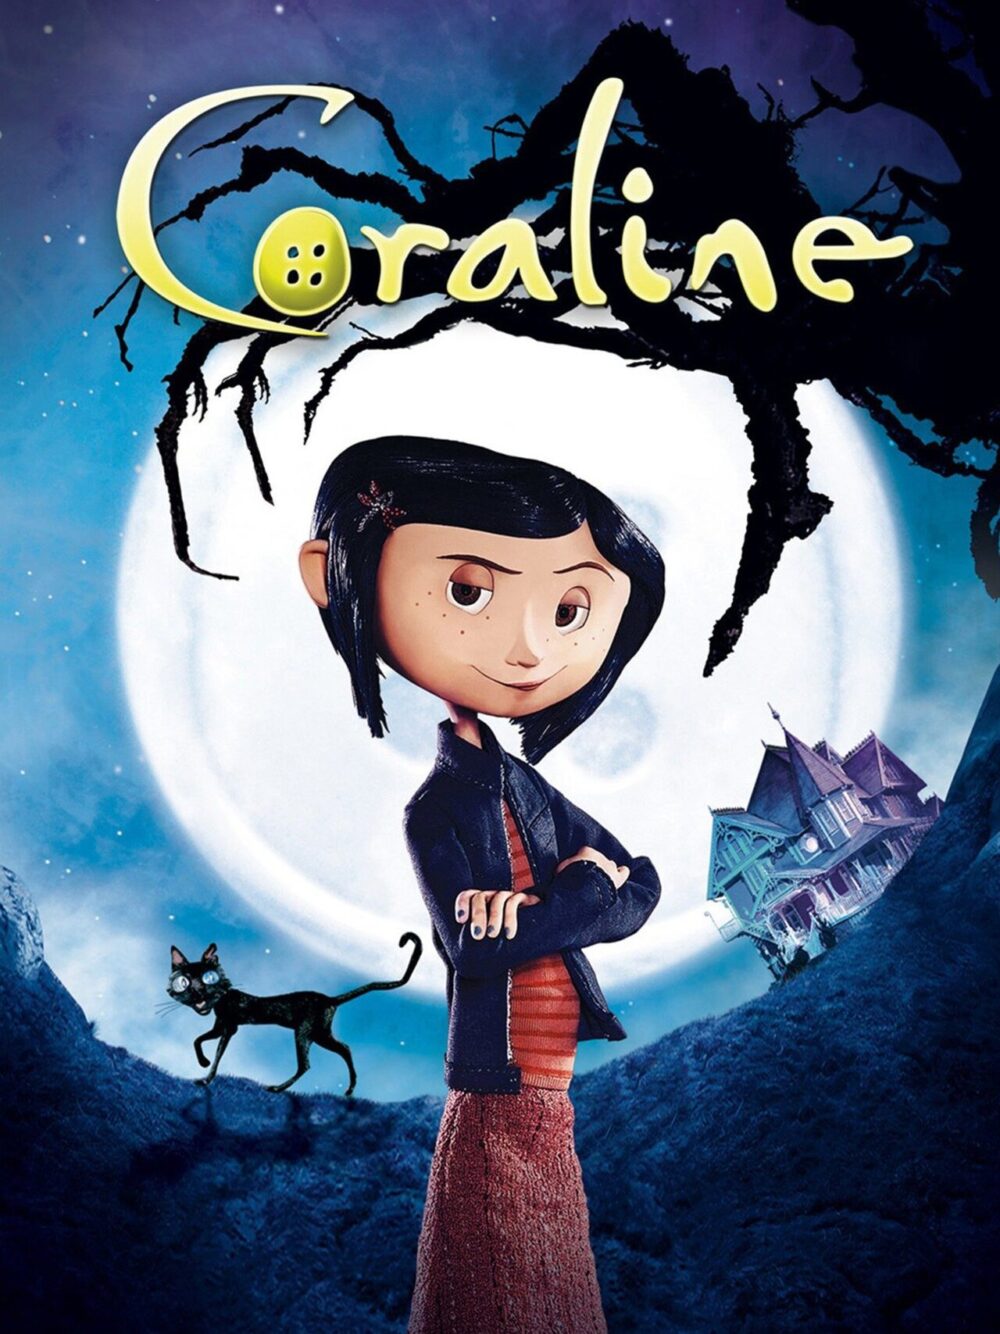 Coraline được chuyển thể thành phim hoạt hình